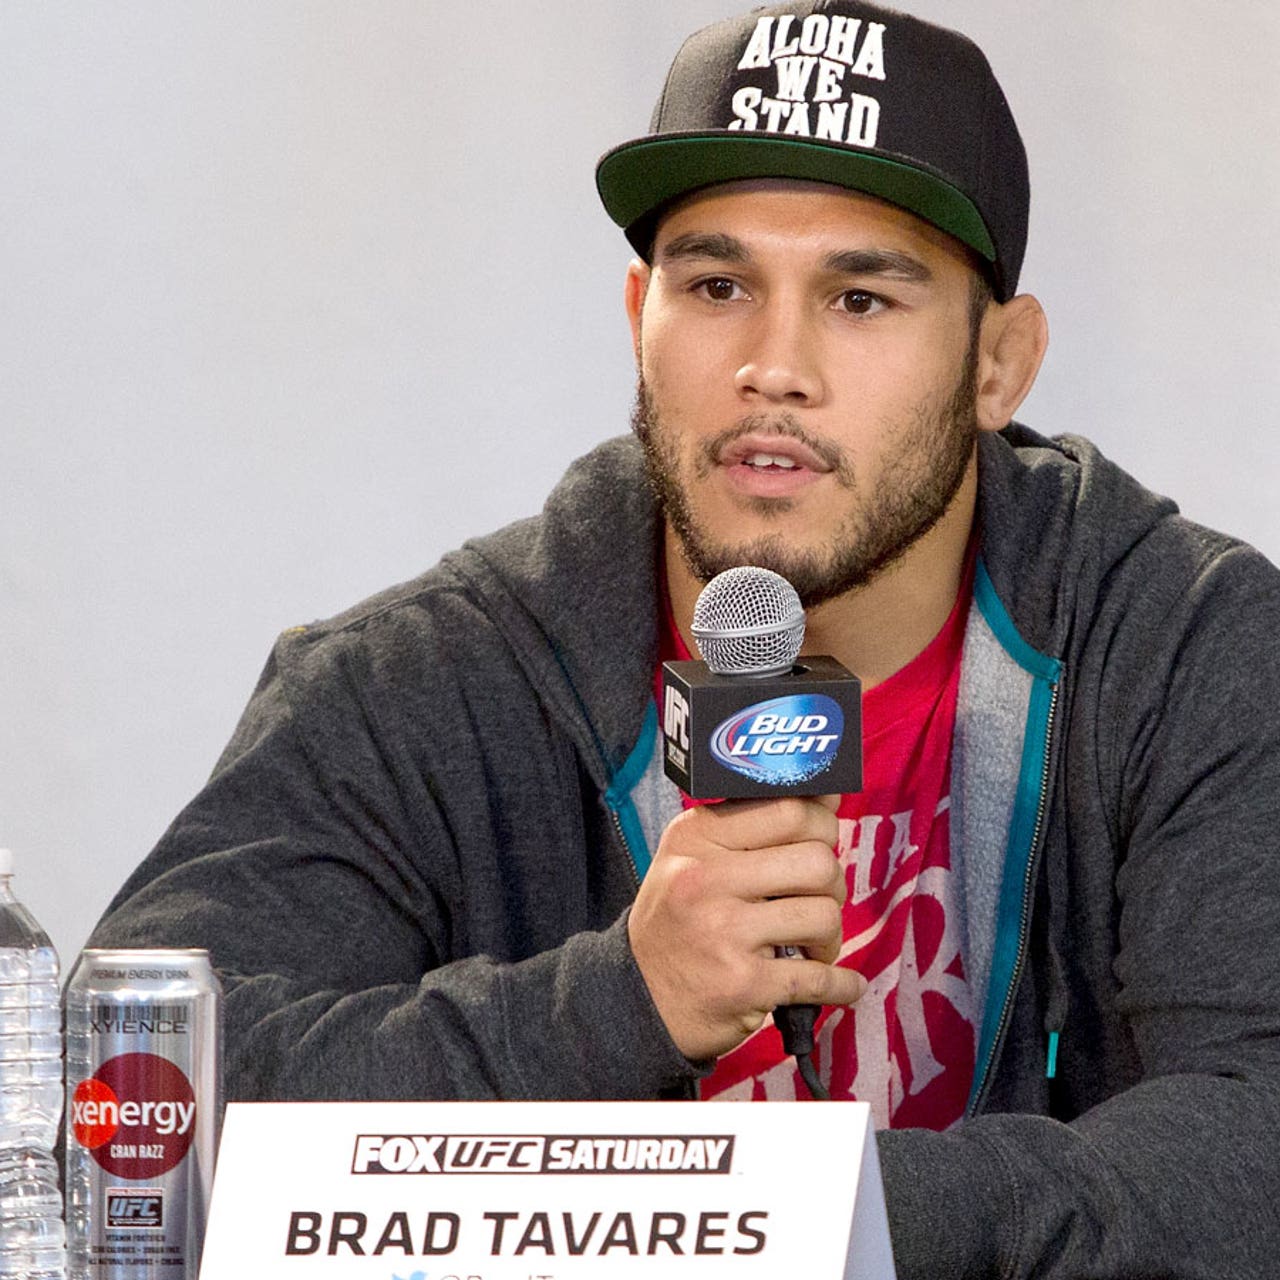 Still young at 26, Brad Tavares has upside despite flying under the radar